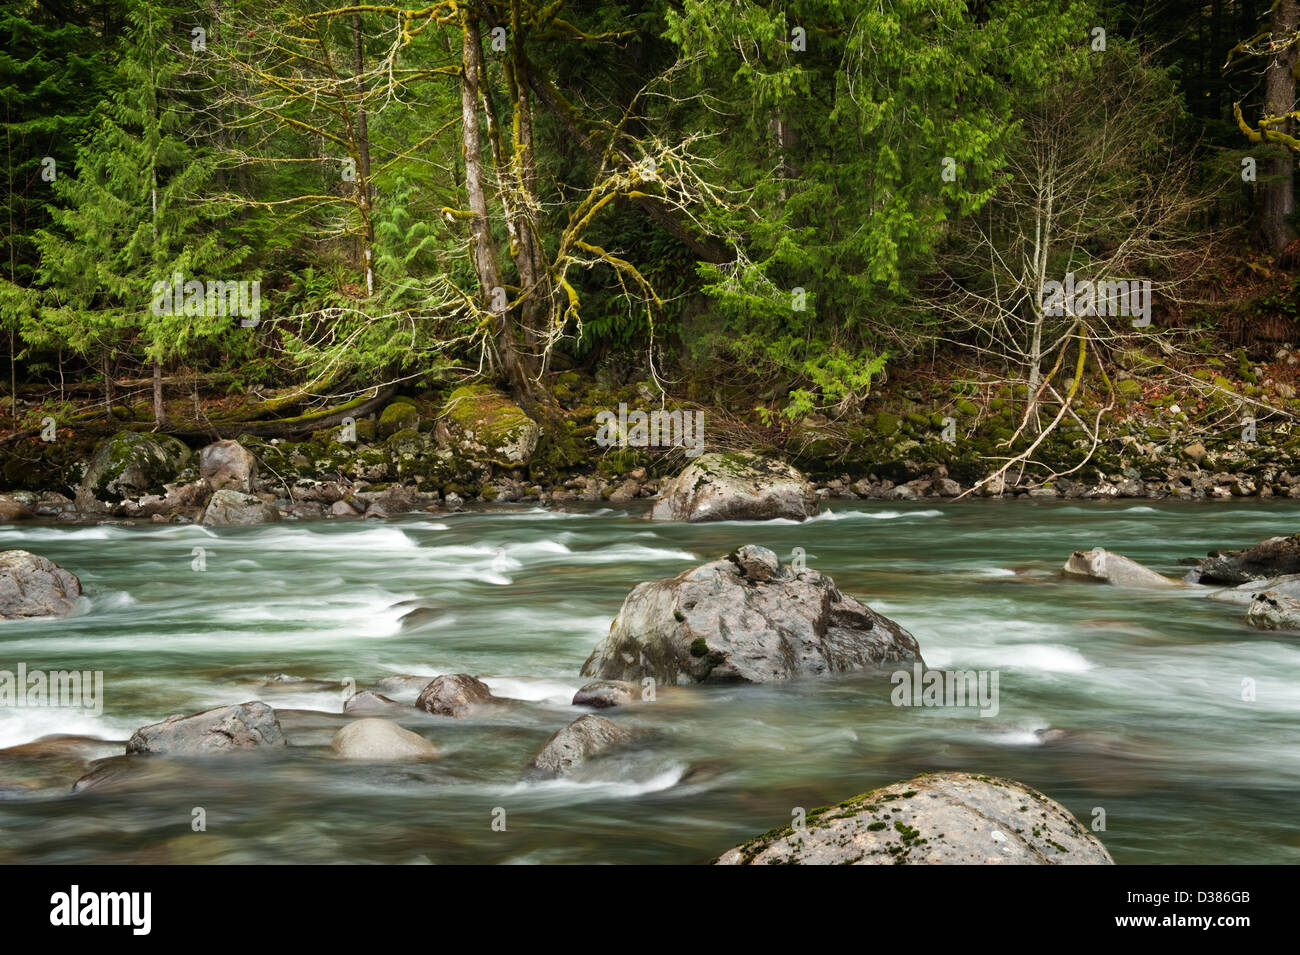 Le milieu de la fourche de la rivière Snoqualmie dans l'ouest de l'État de Washington est une belle rivière qui coule dans un environnement de forêt tropicale. Banque D'Images